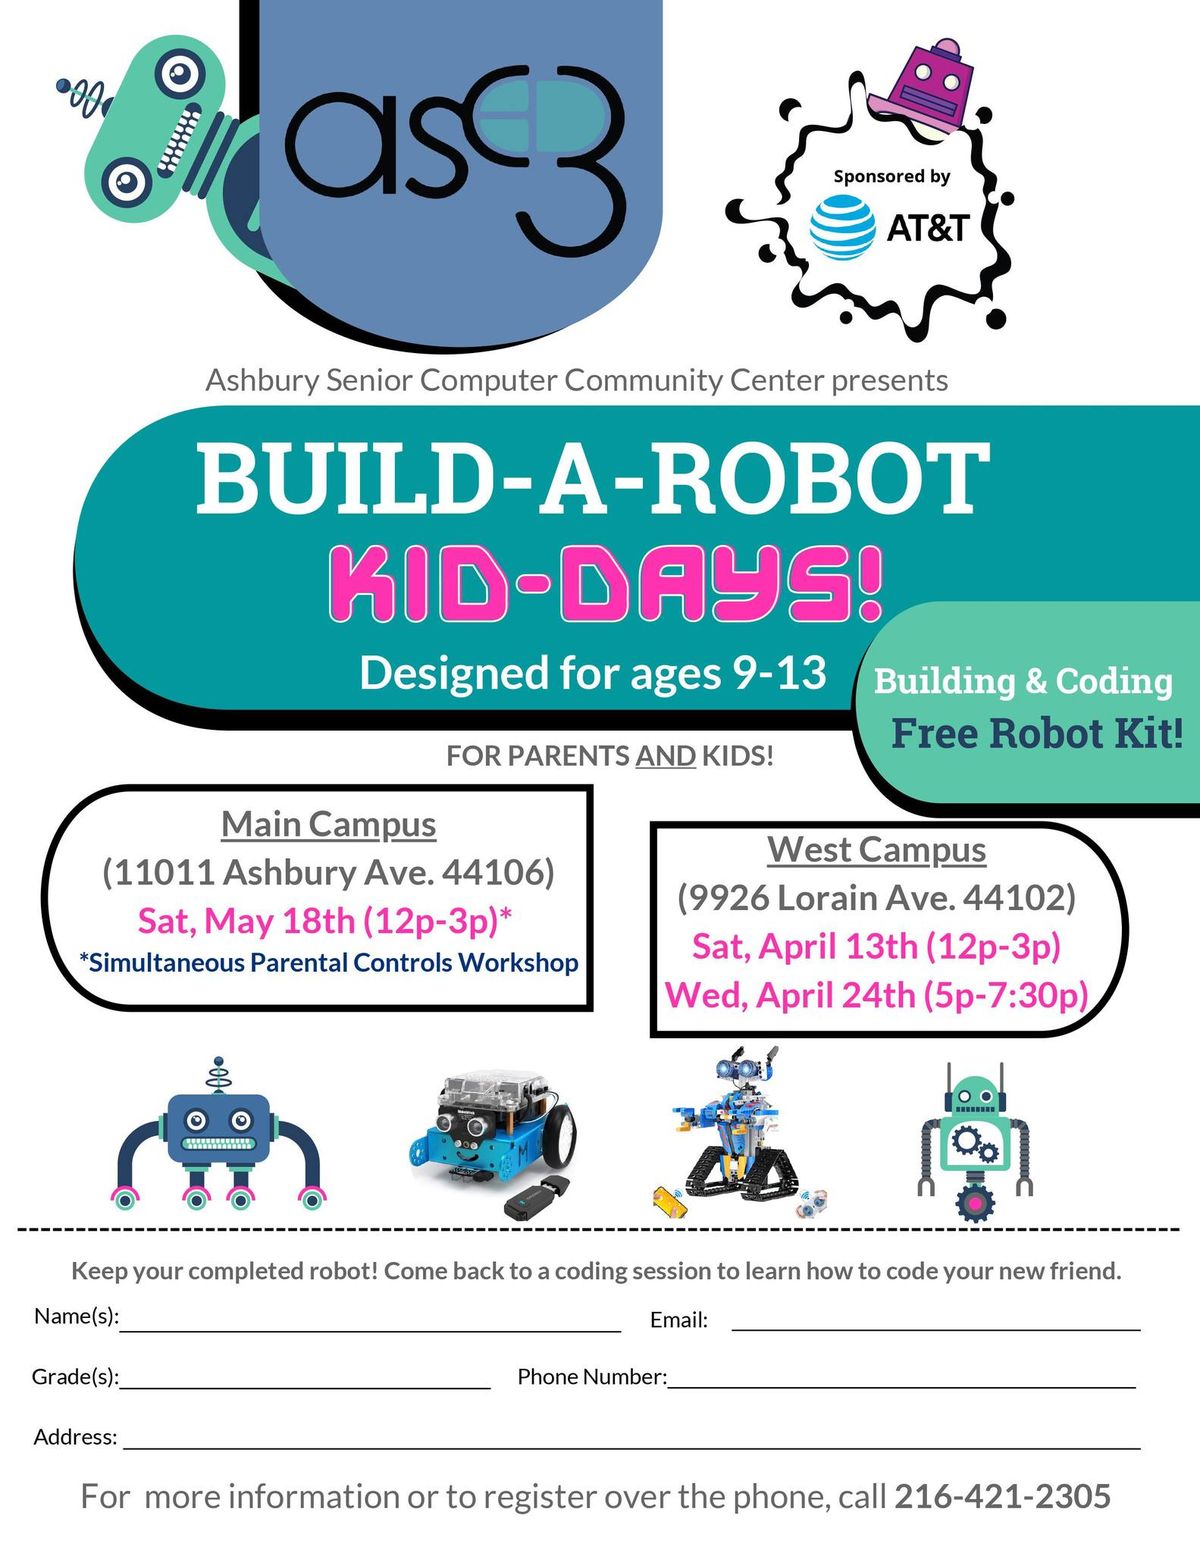 Build-A-Robot Kids Day!